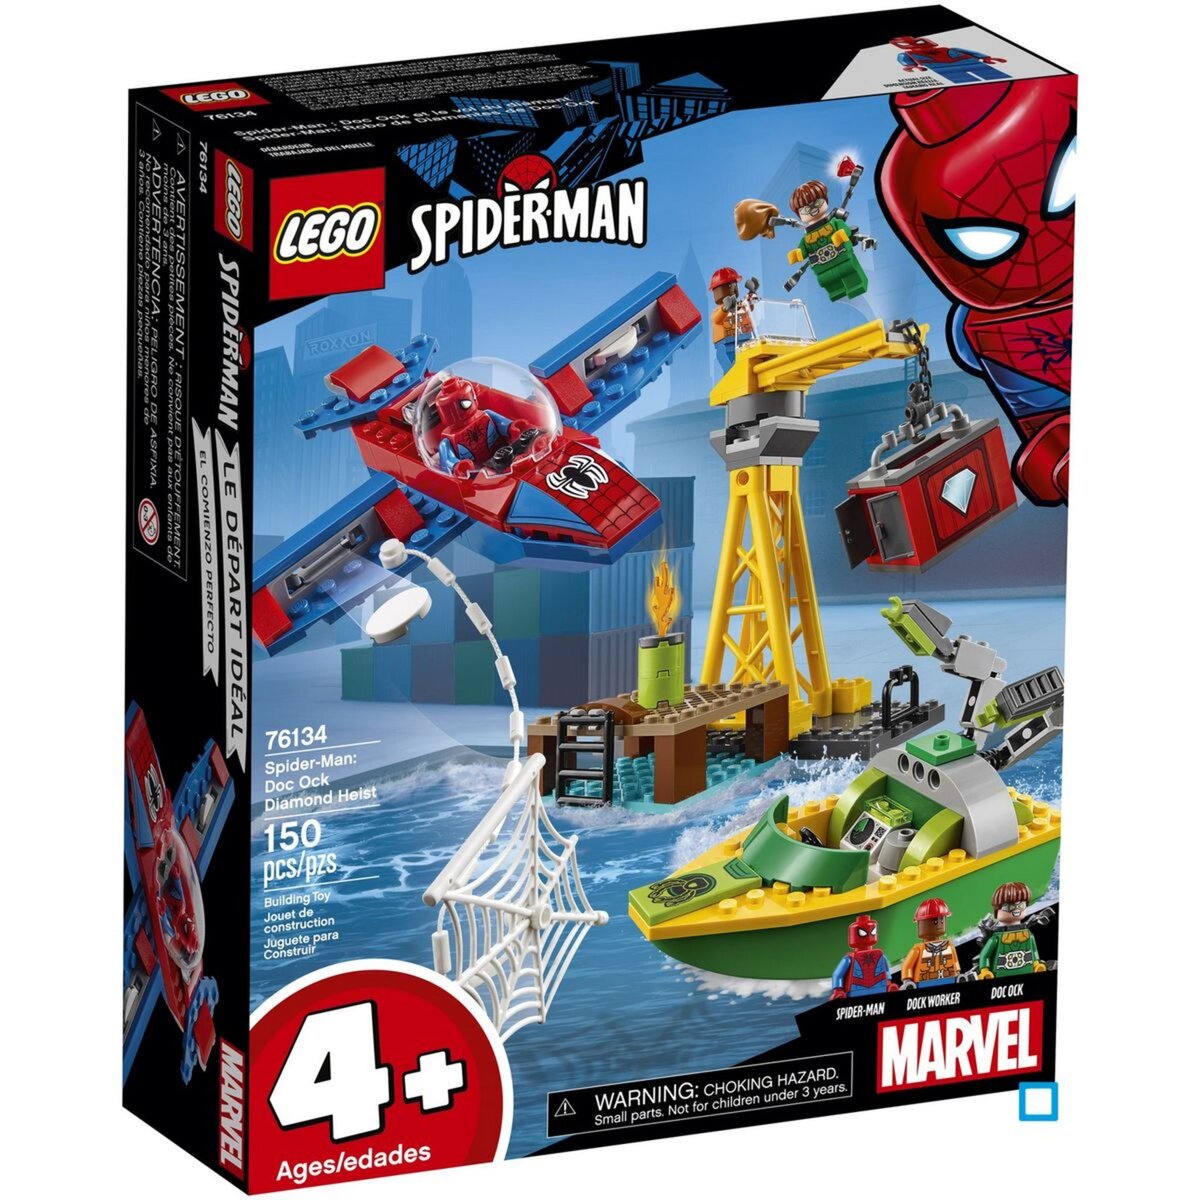 LEGO Marvel 76134 - Spider-Man : Docteur Octopus et le vol du diamant